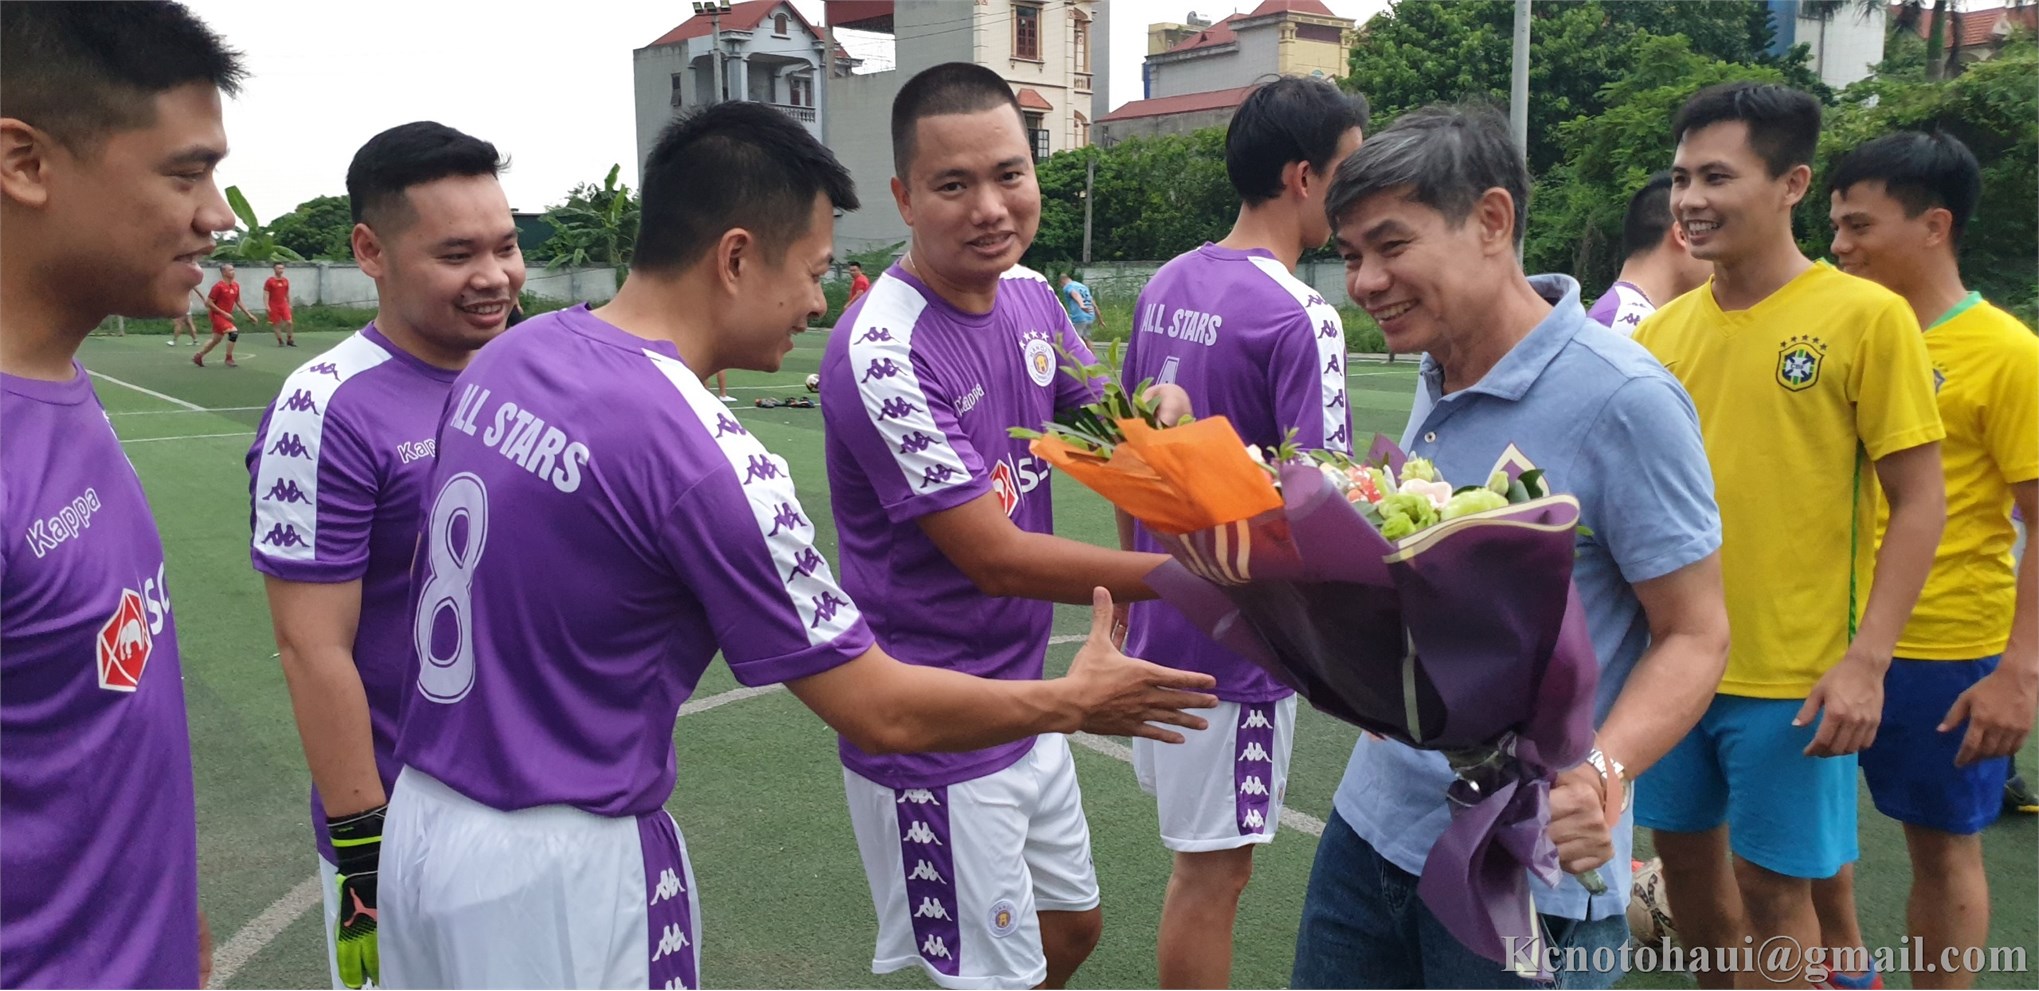 Buổi giao hữu bóng đá với đội tuyển cựu sinh viên ĐHÔTÔ Khóa 1